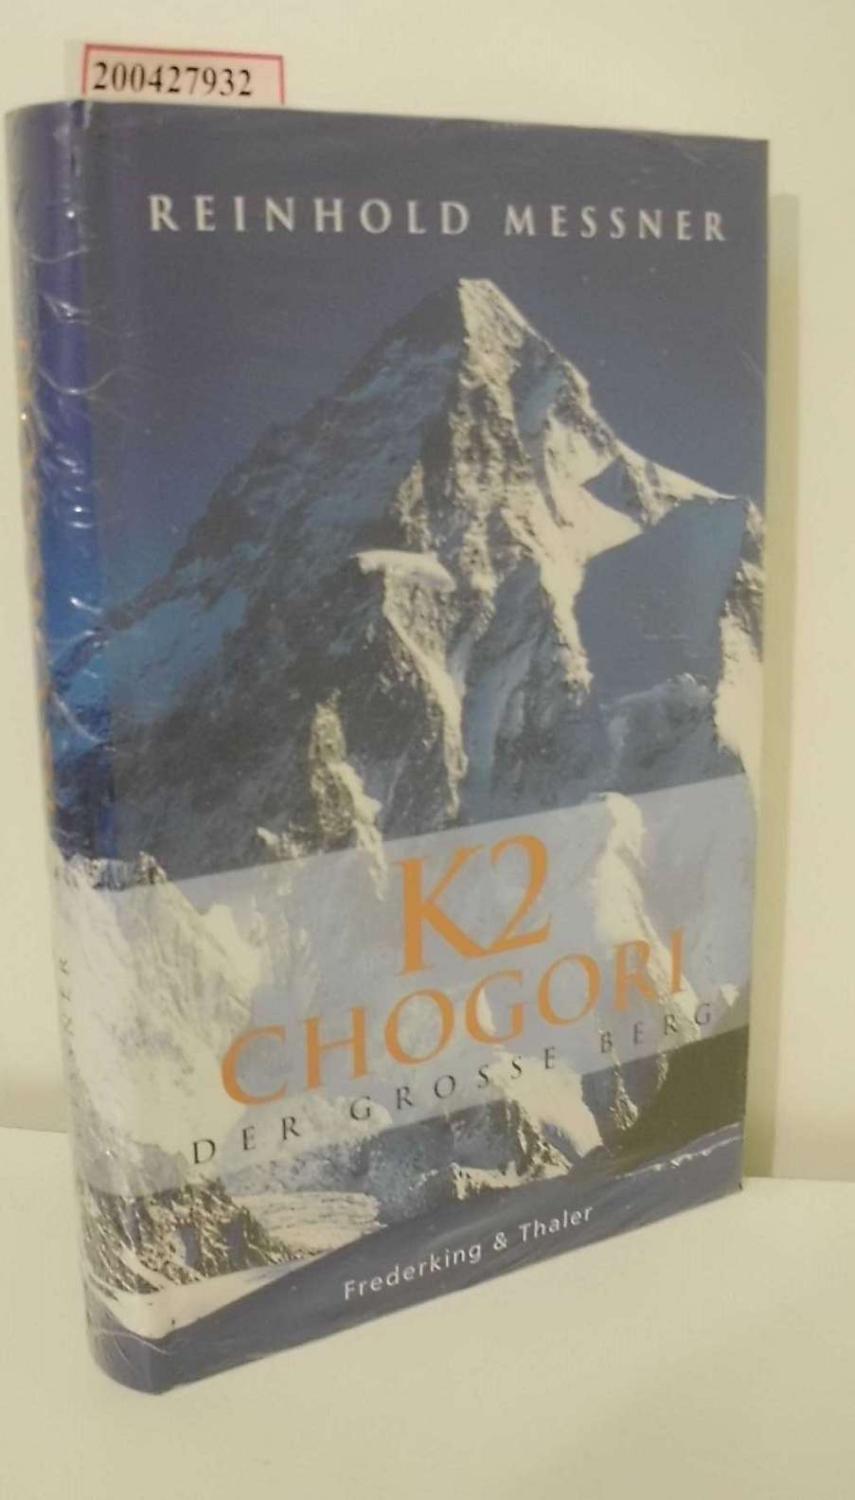 K2 - Chogori : der große Berg / Reinhold Messner Der große Berg - Messner, Reinhold